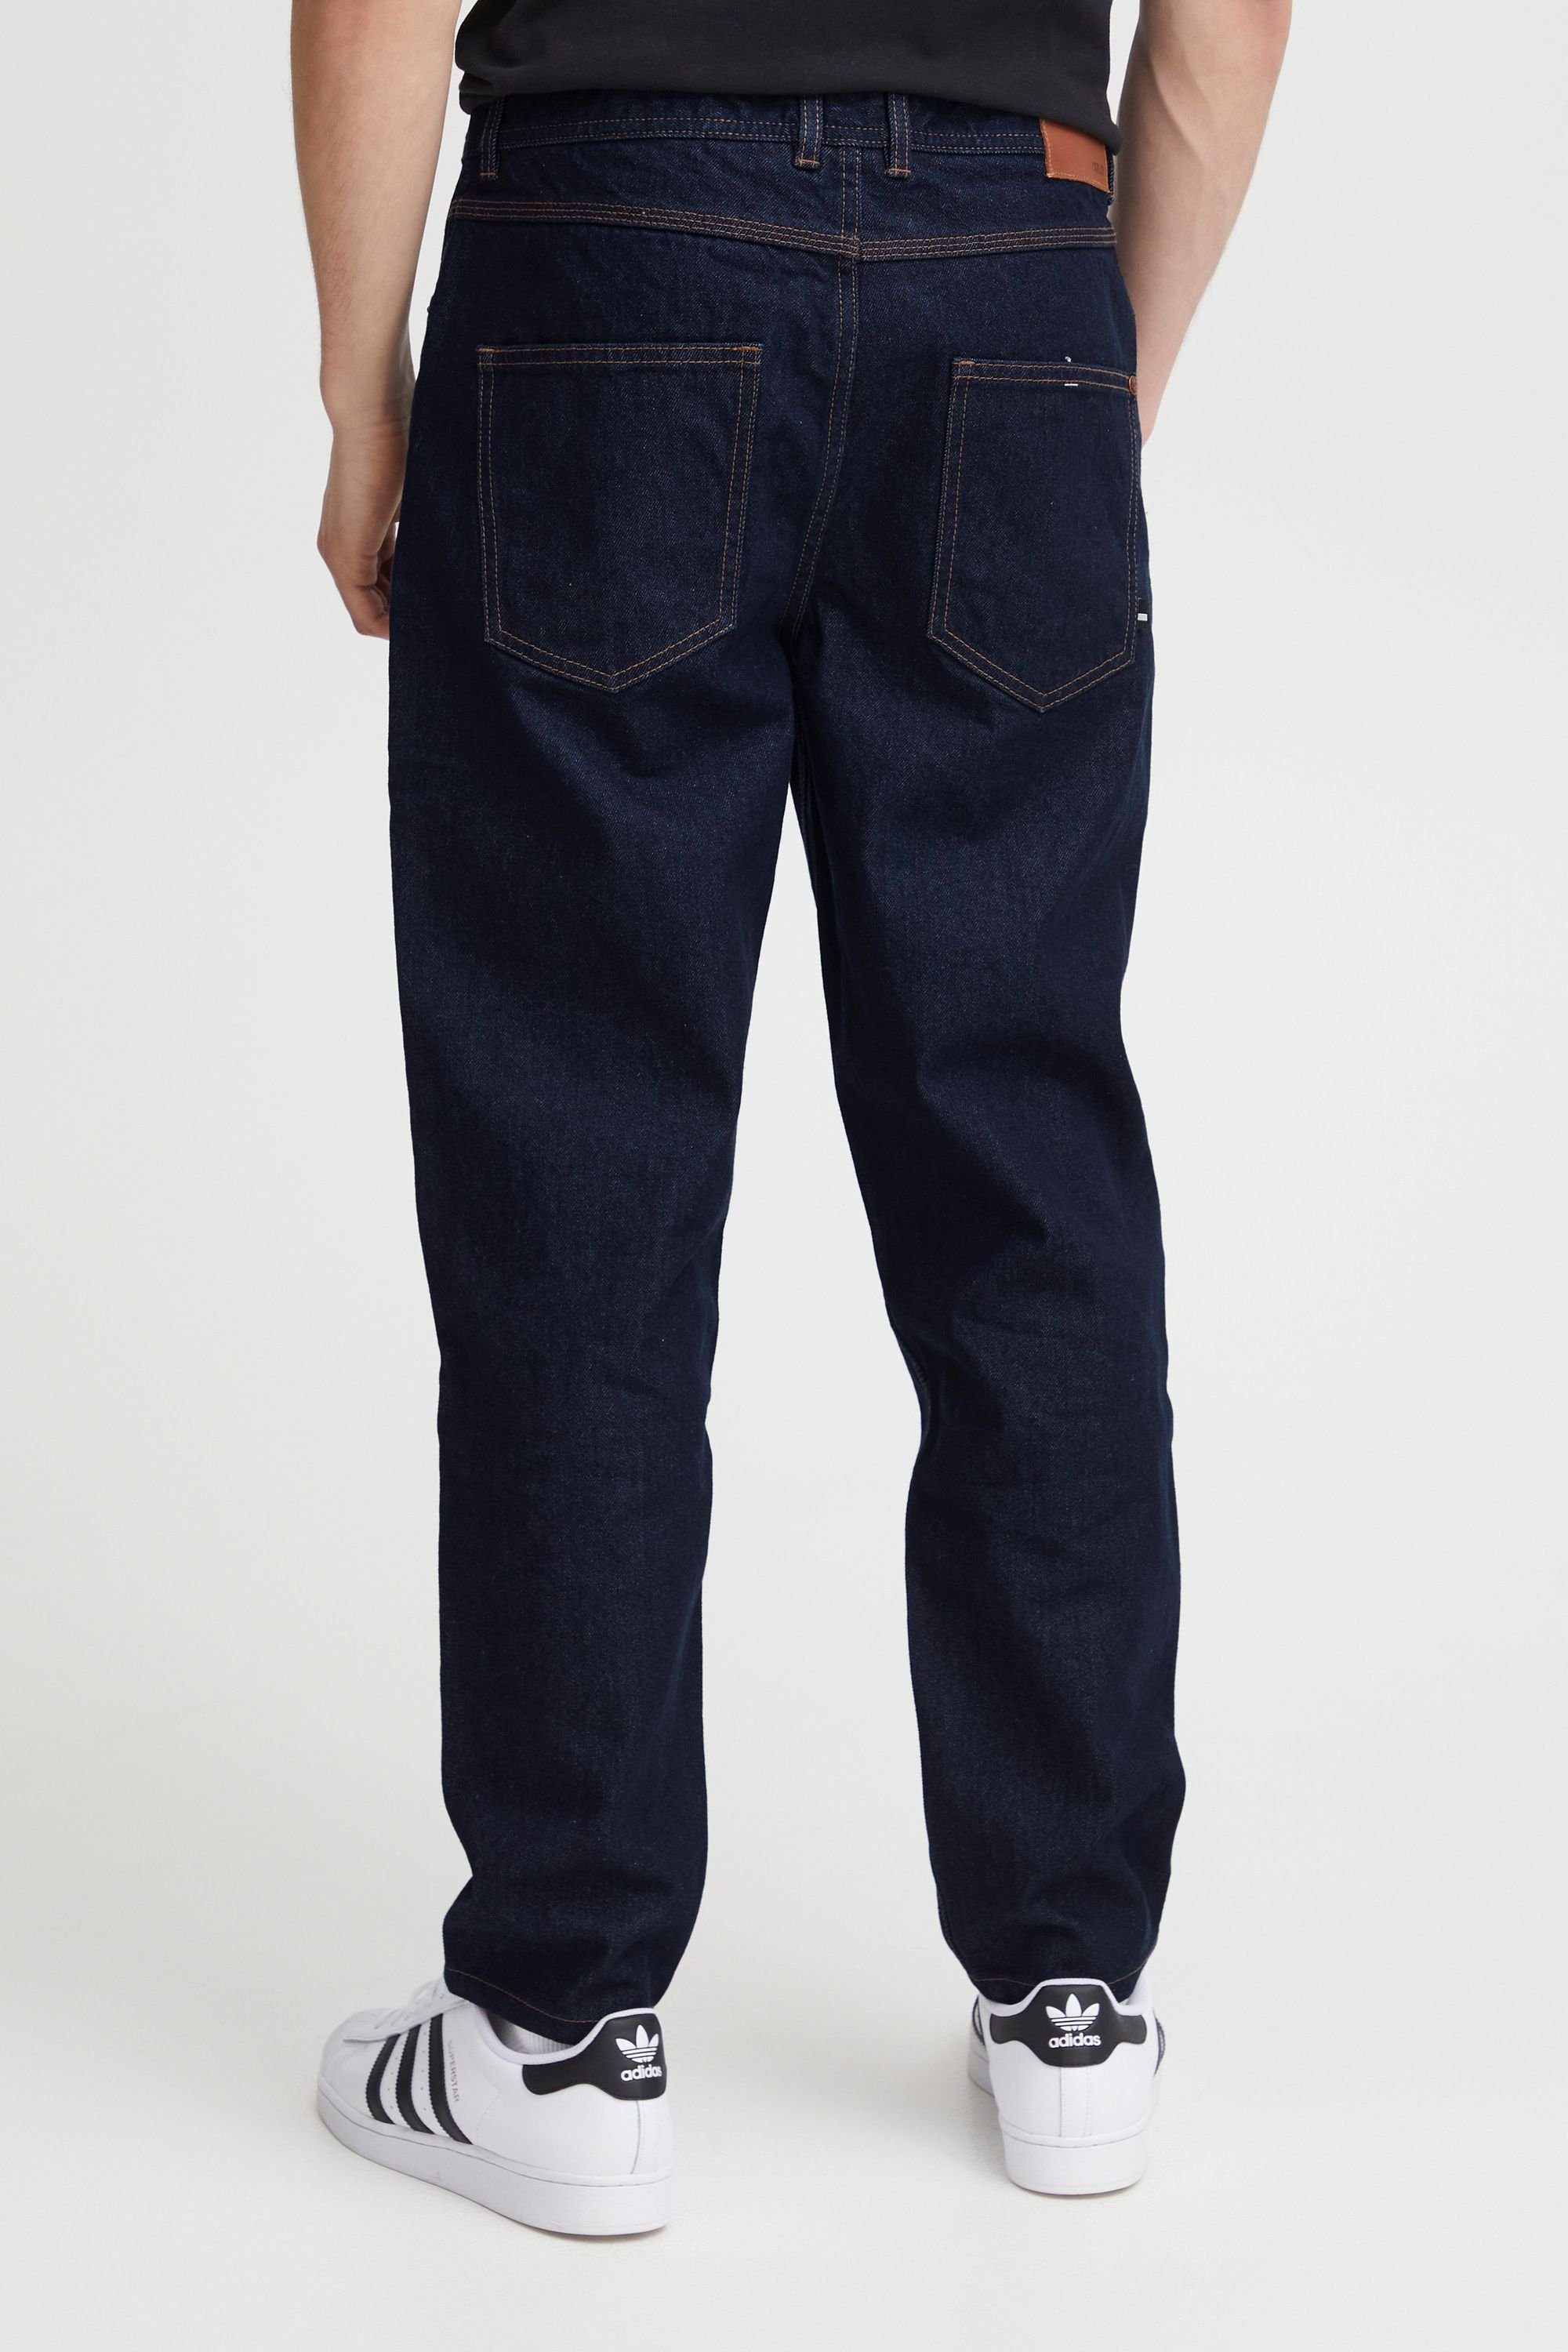 !Solid Denim SDHoff 5-Pocket-Jeans Blue Dark (700031)